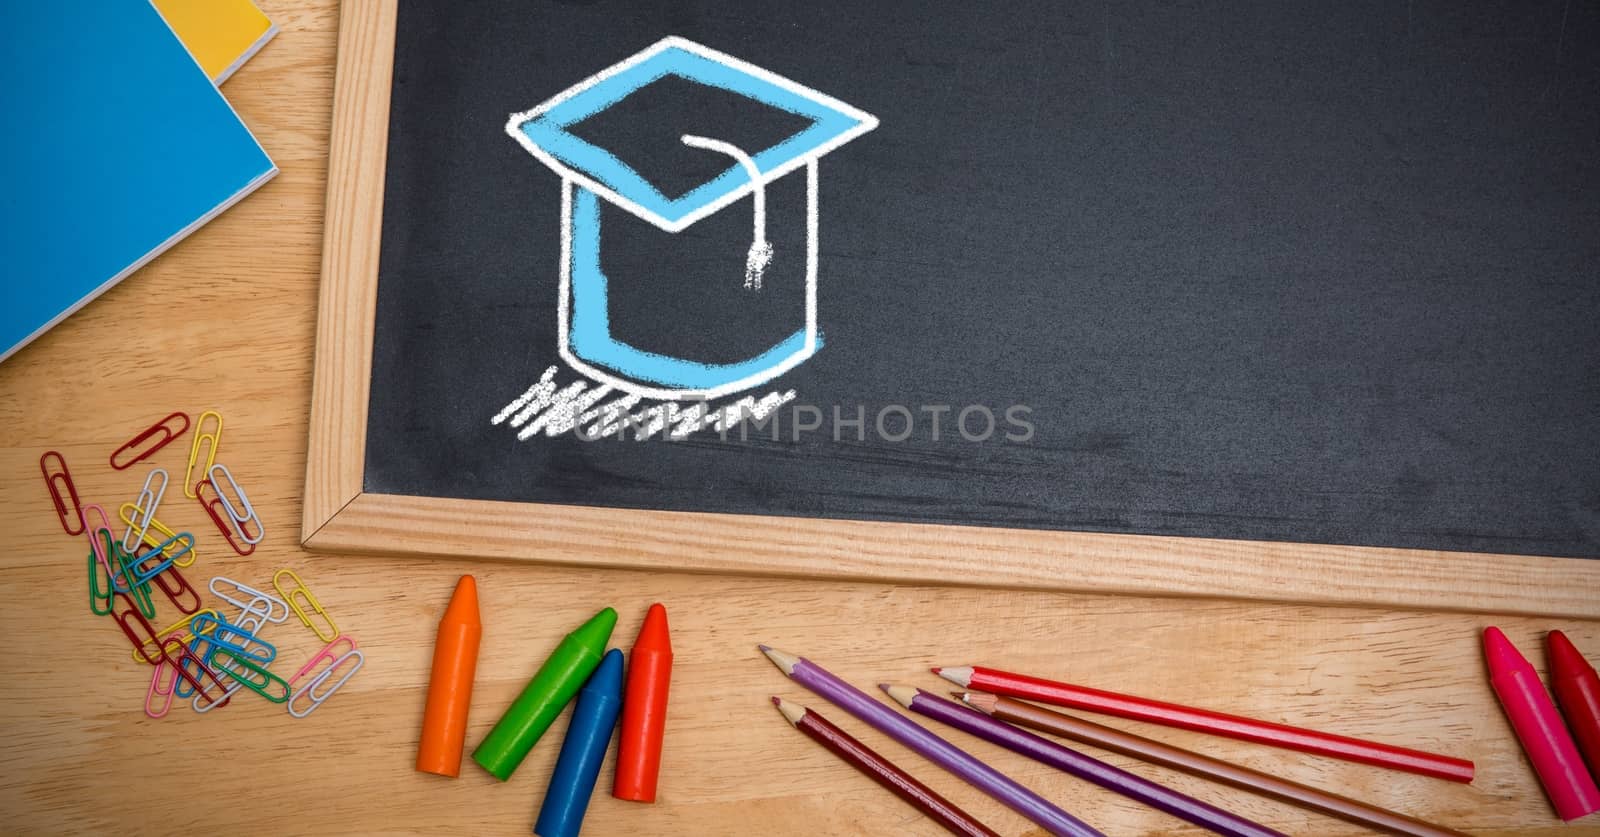 Graduation hat education drawings on blackboard for school by Wavebreakmedia